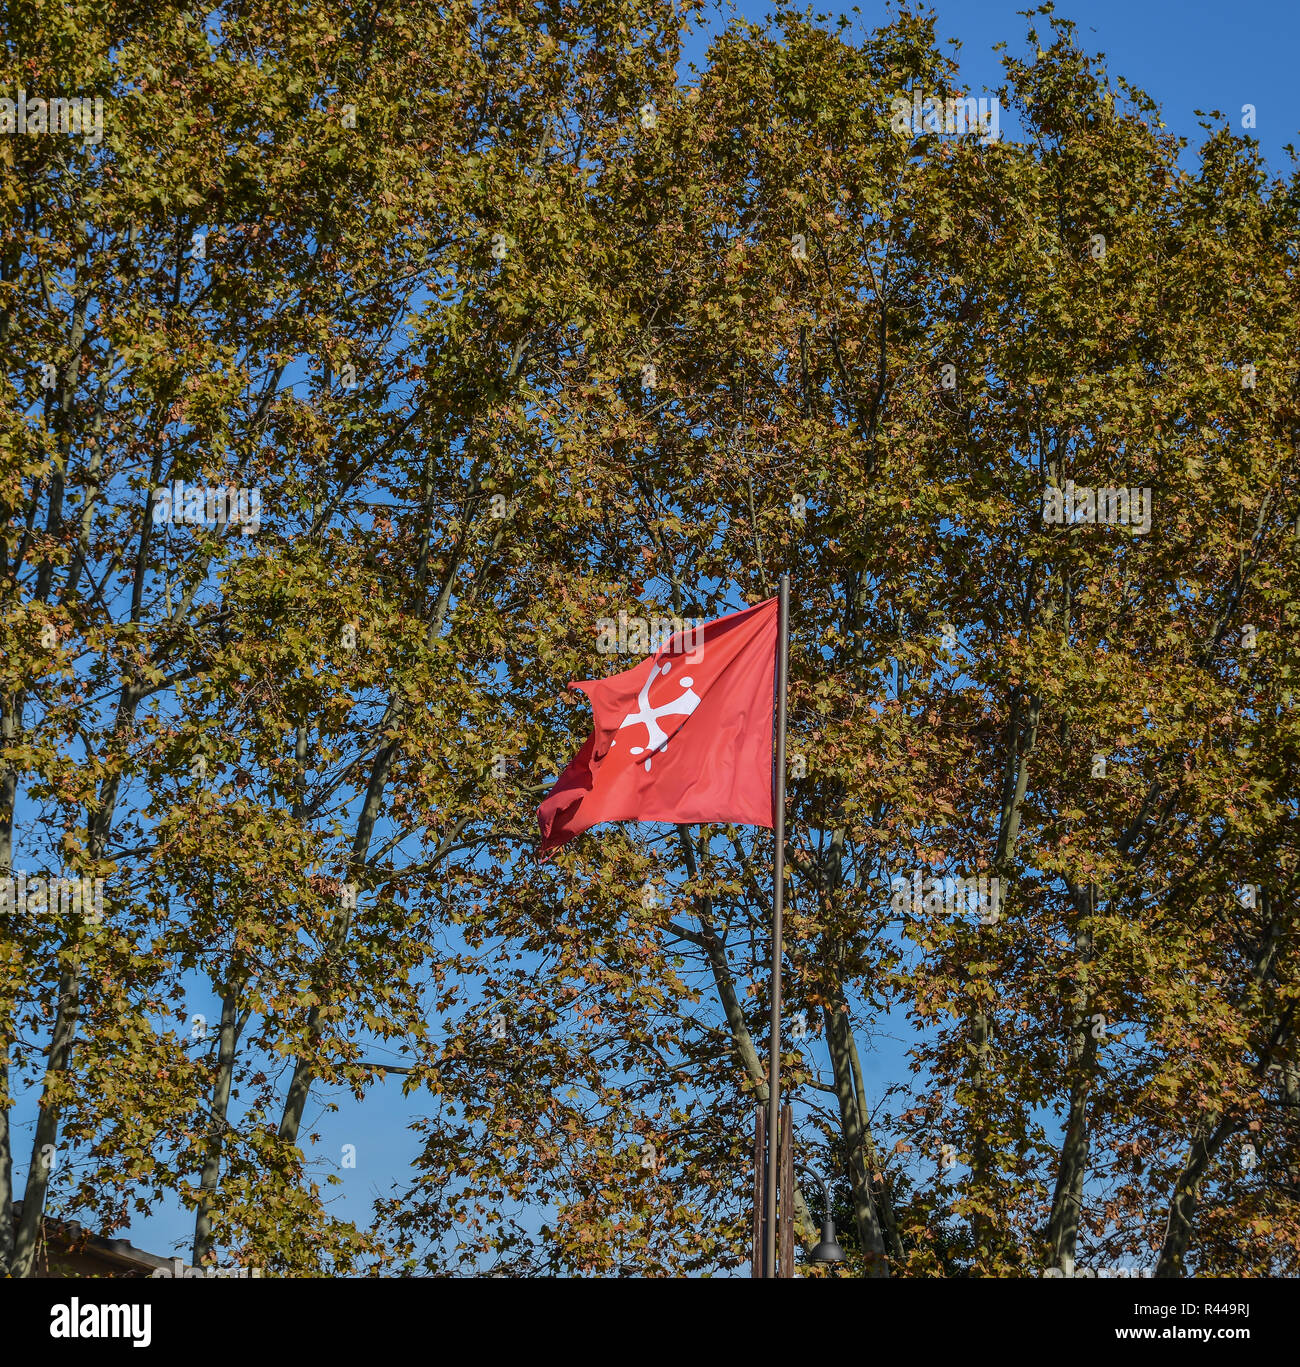 Repubblica di Pisa vecchia bandiera rossa con una croce bianca, una delle  più potenti antica repubblica marinara nel Mediterraneo durante il Medioevo  Foto stock - Alamy